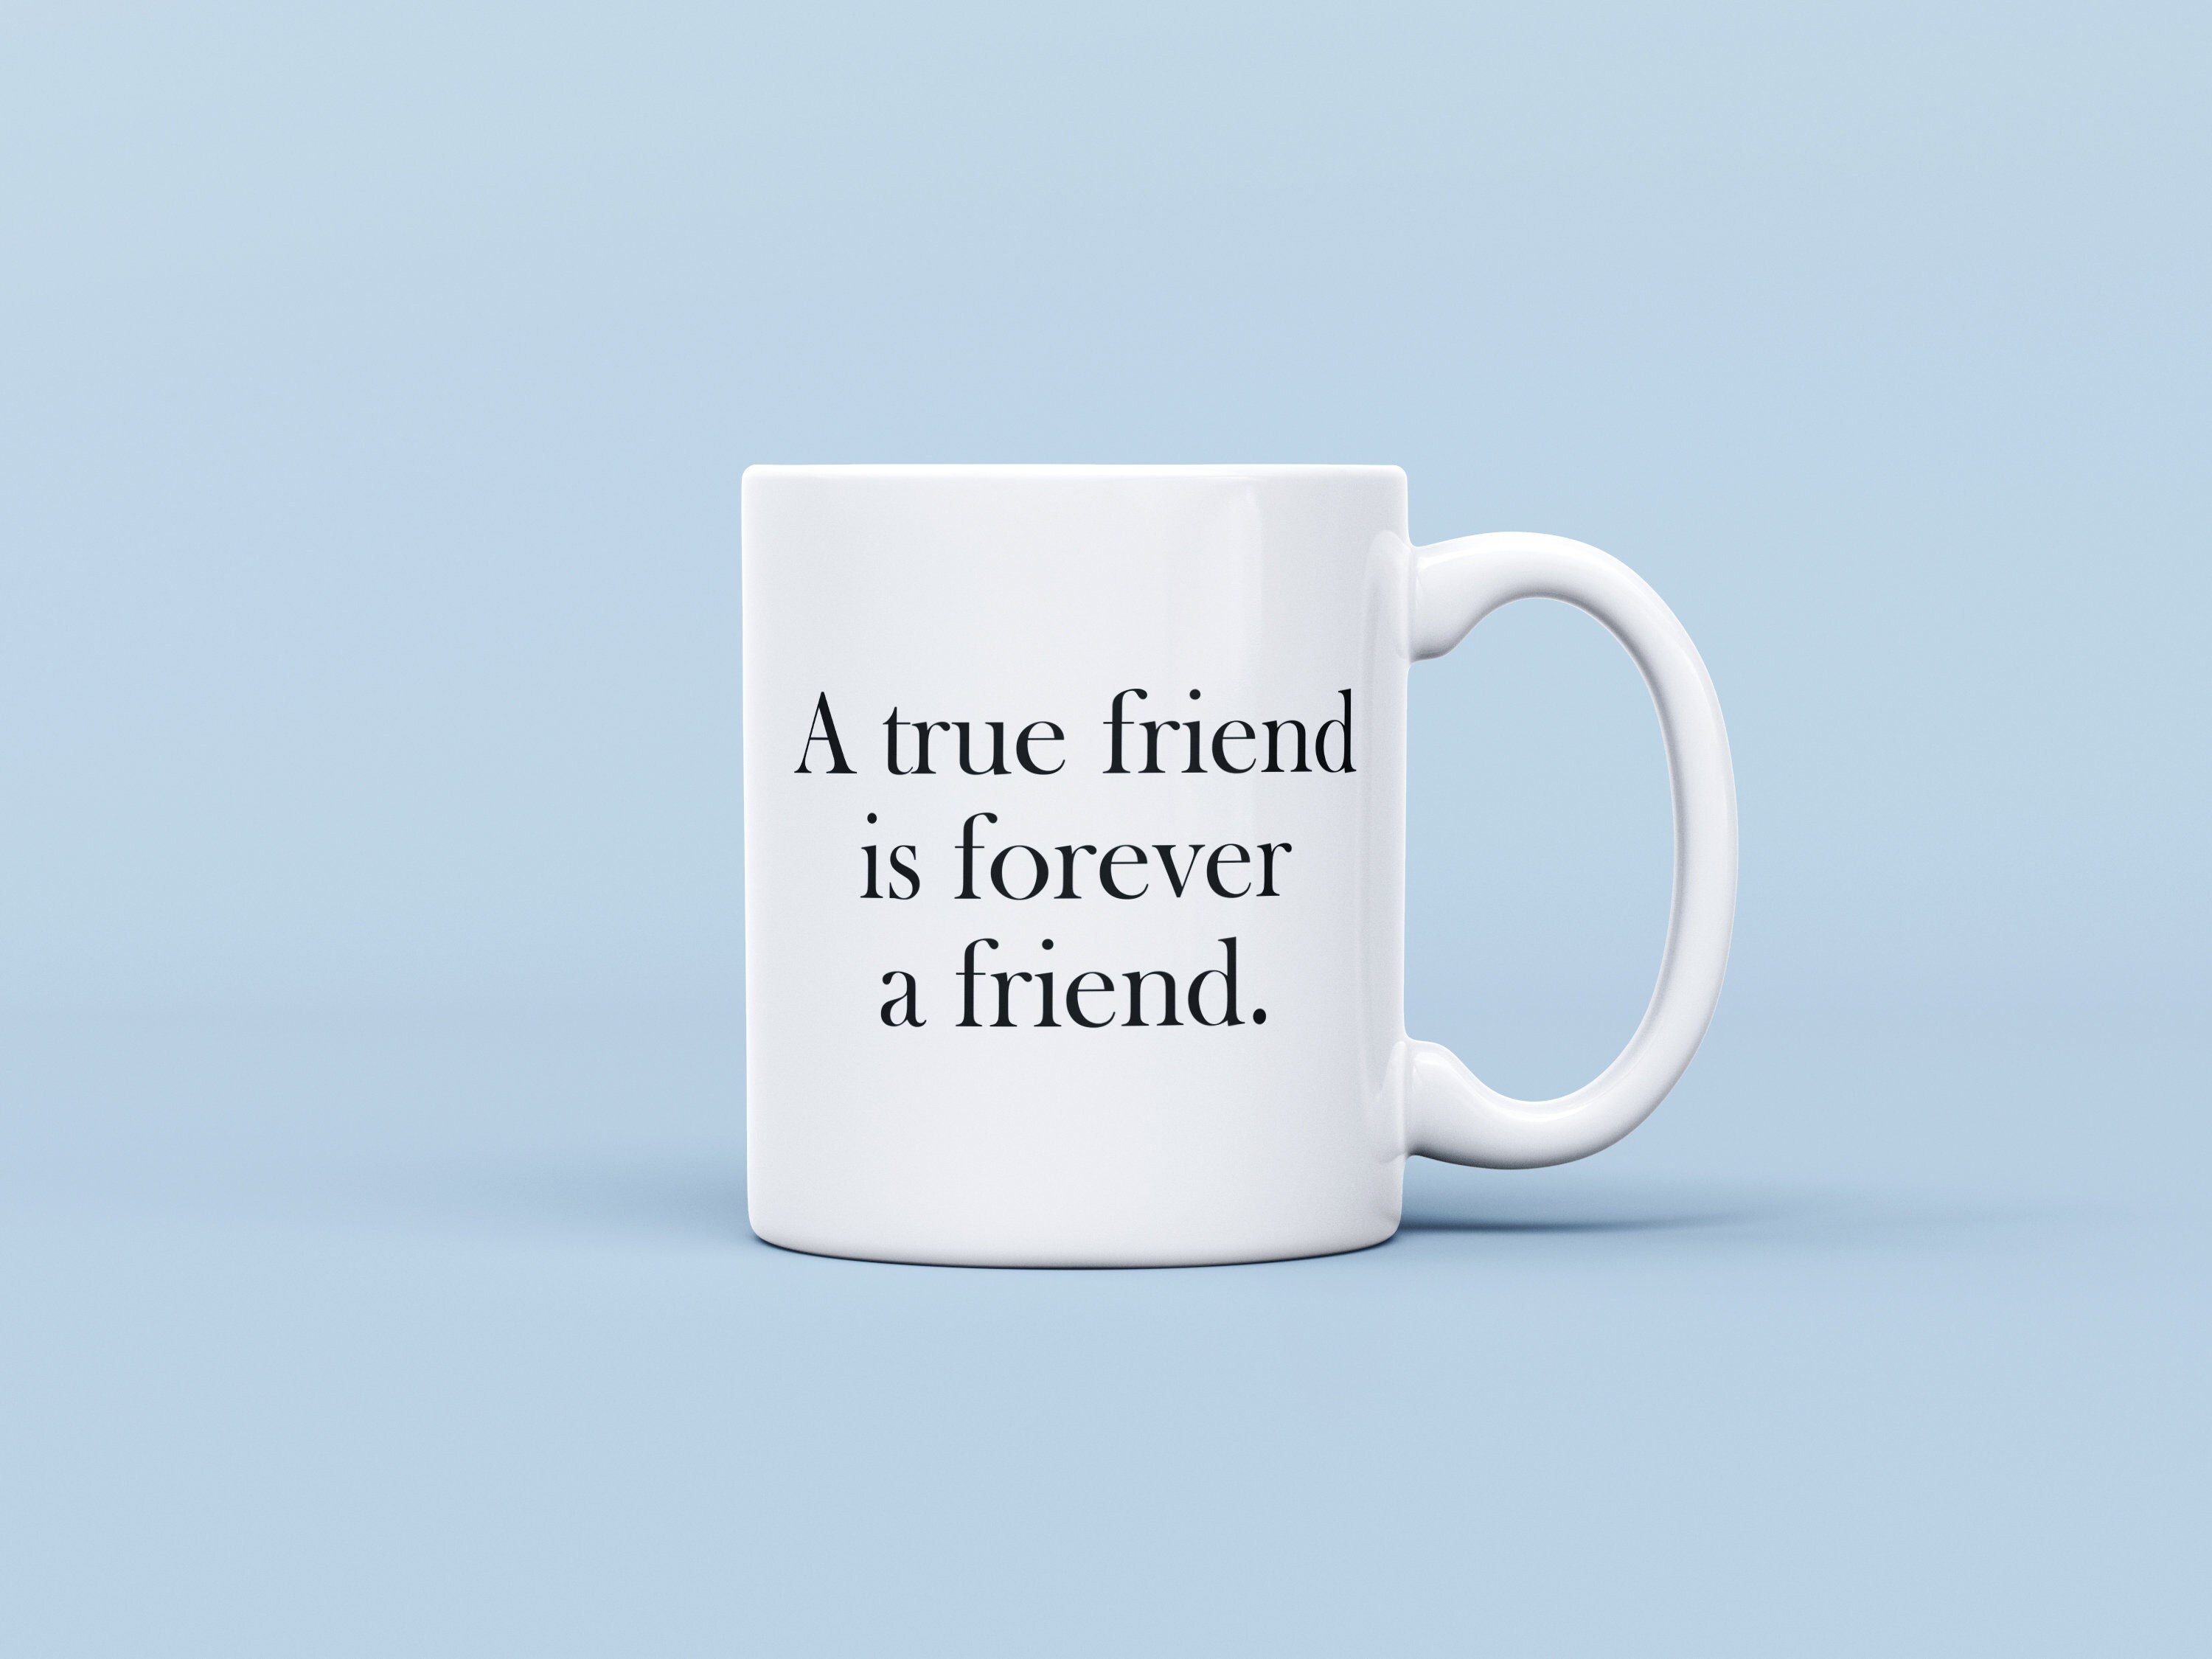 Taza regalo original para amigas-detalle de amistad_cumpleaños_amistad